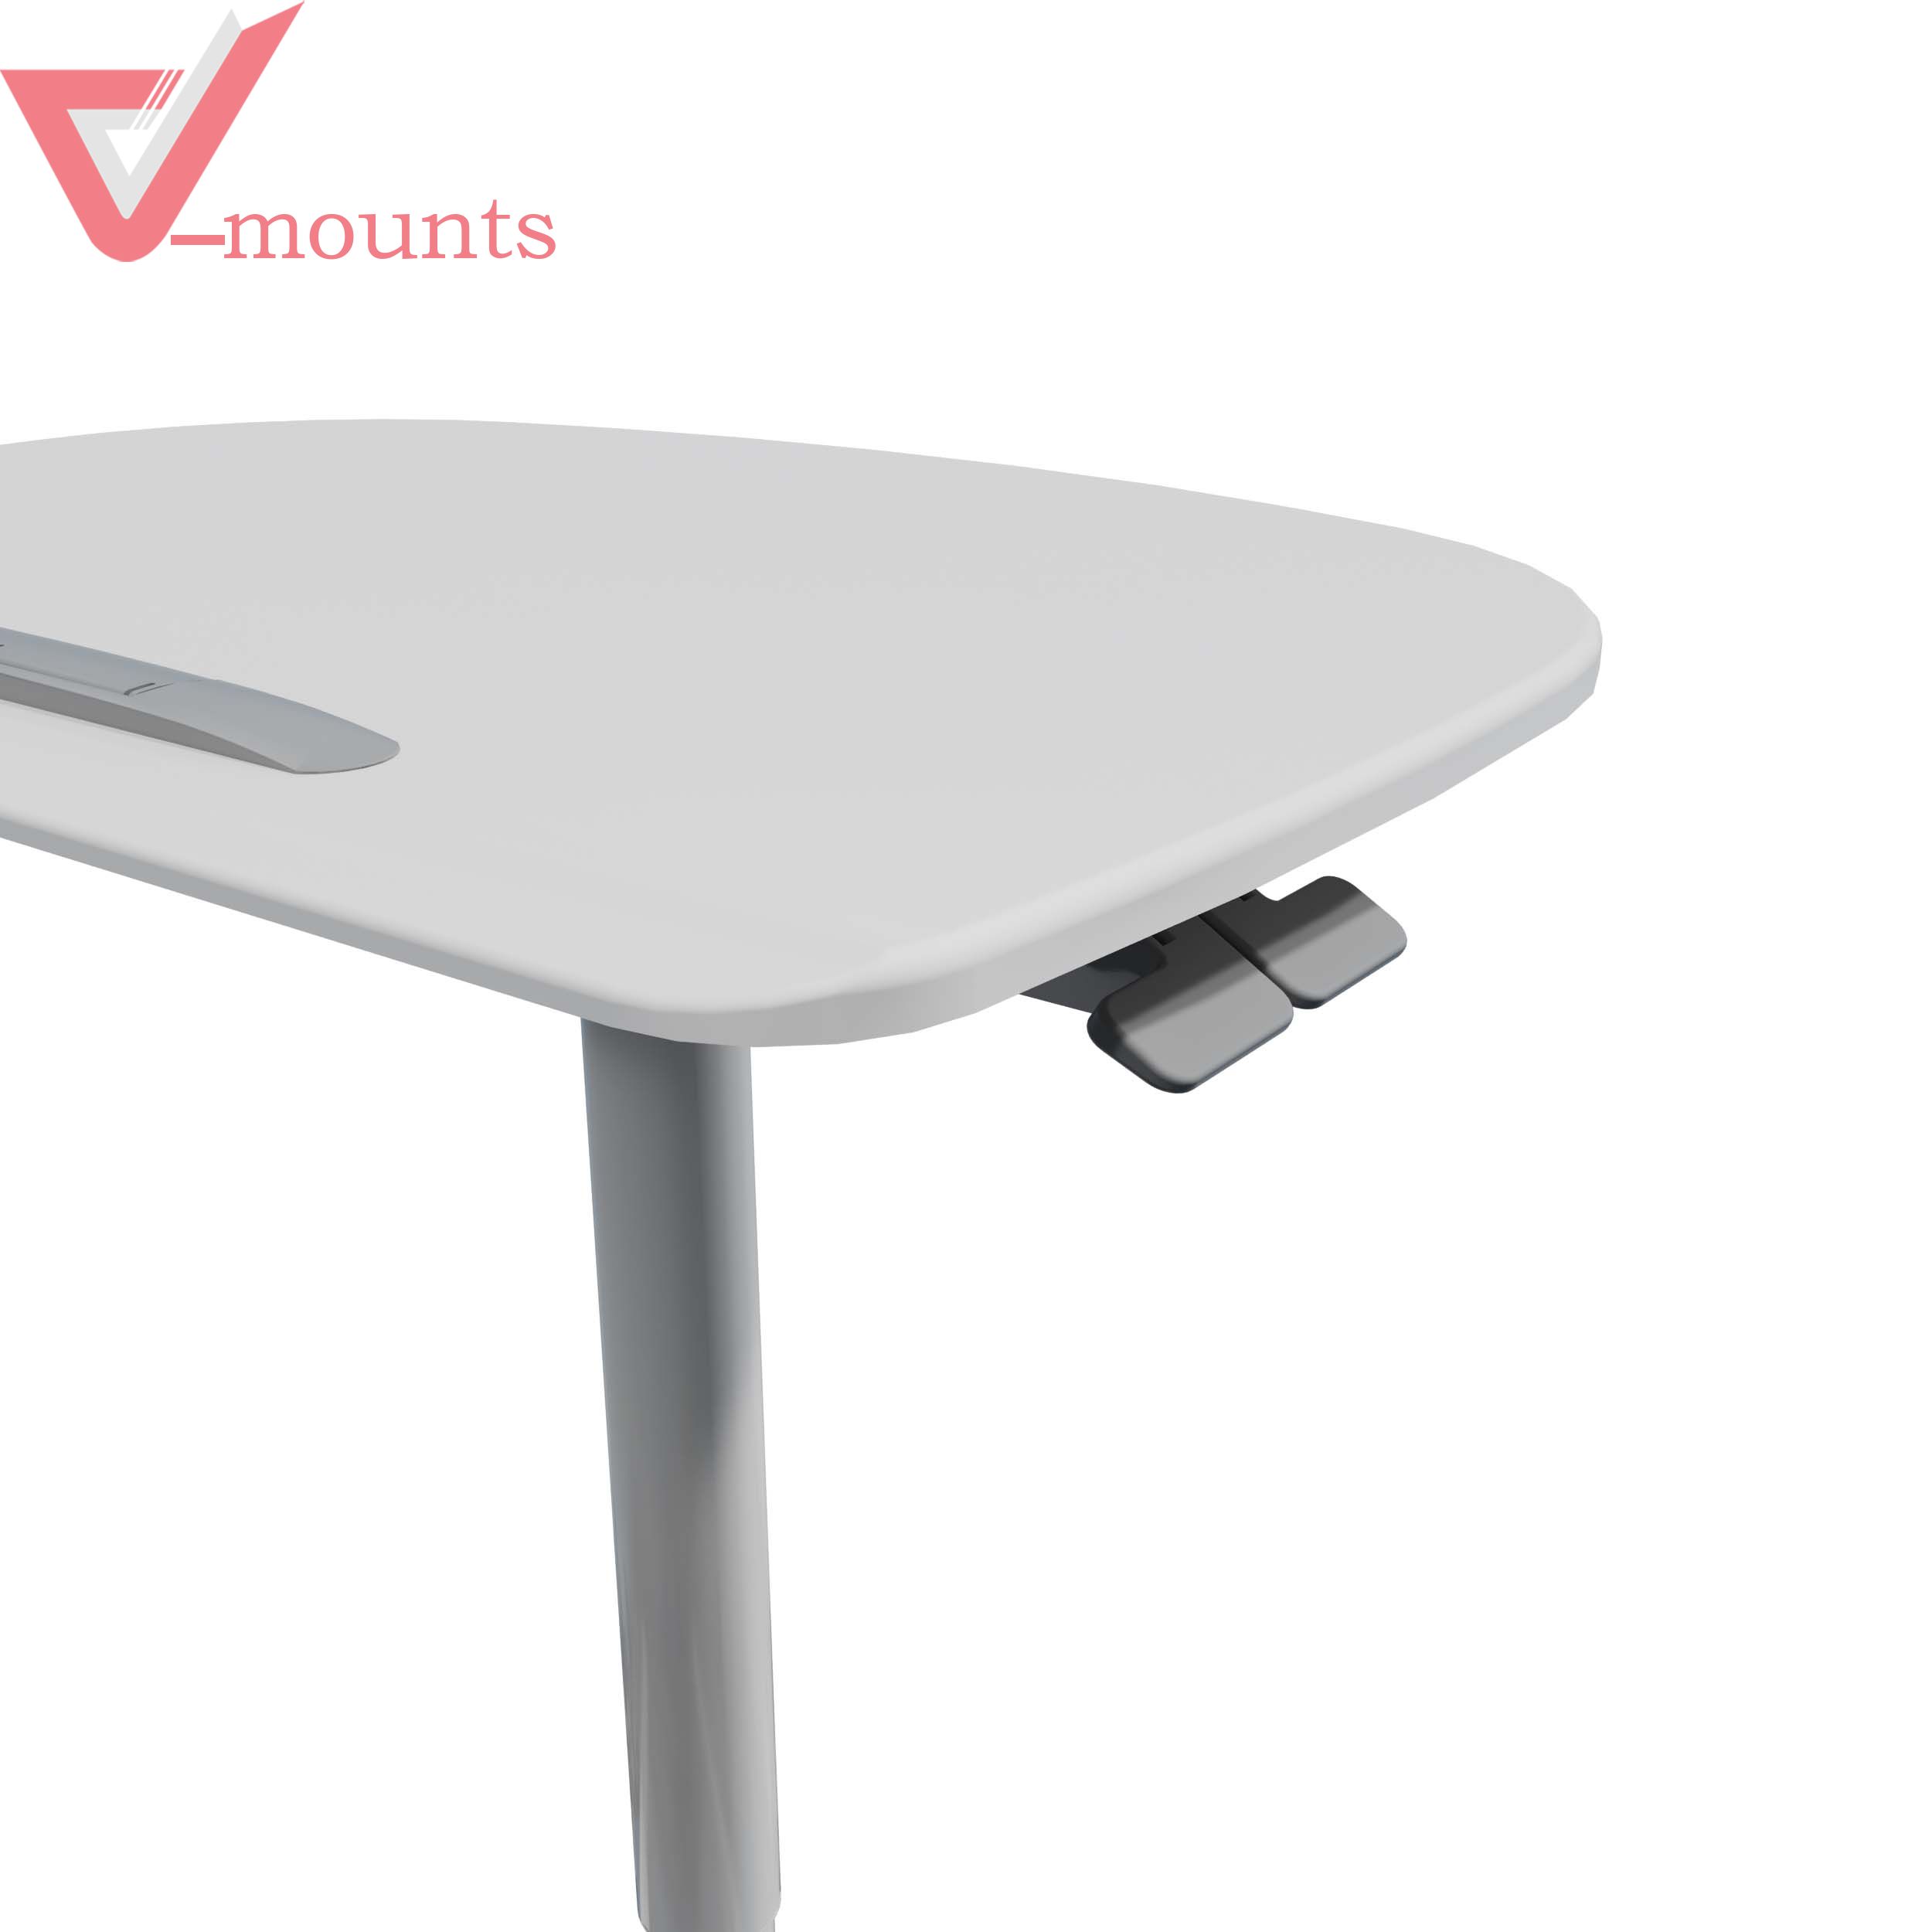 V-mounts SpaceErgo Gas Spring Height Adjustable movable Laptop Desk VM-FDS110